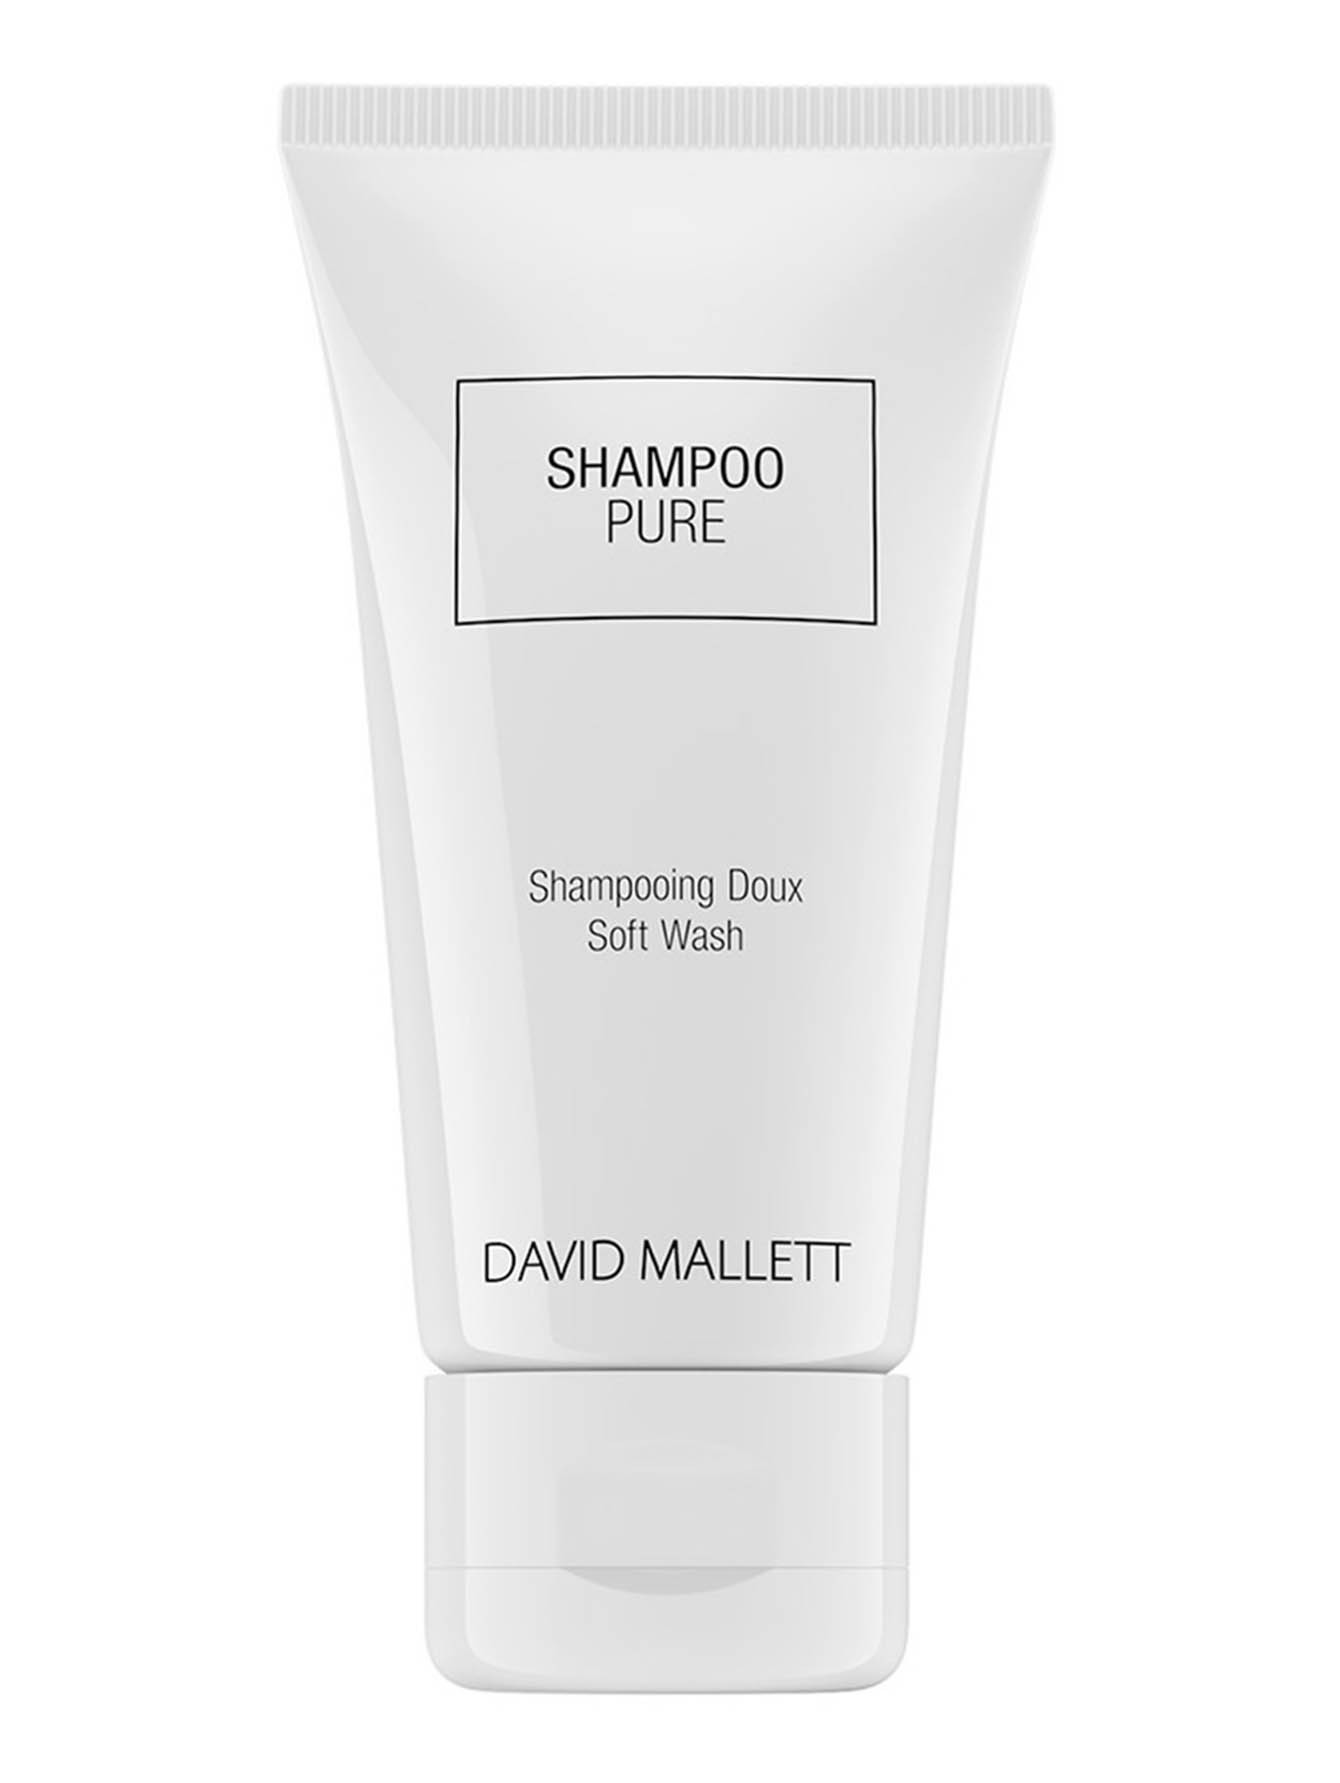 Питательный шампунь для сияния волос Shampoo Pure, 50 мл - Общий вид